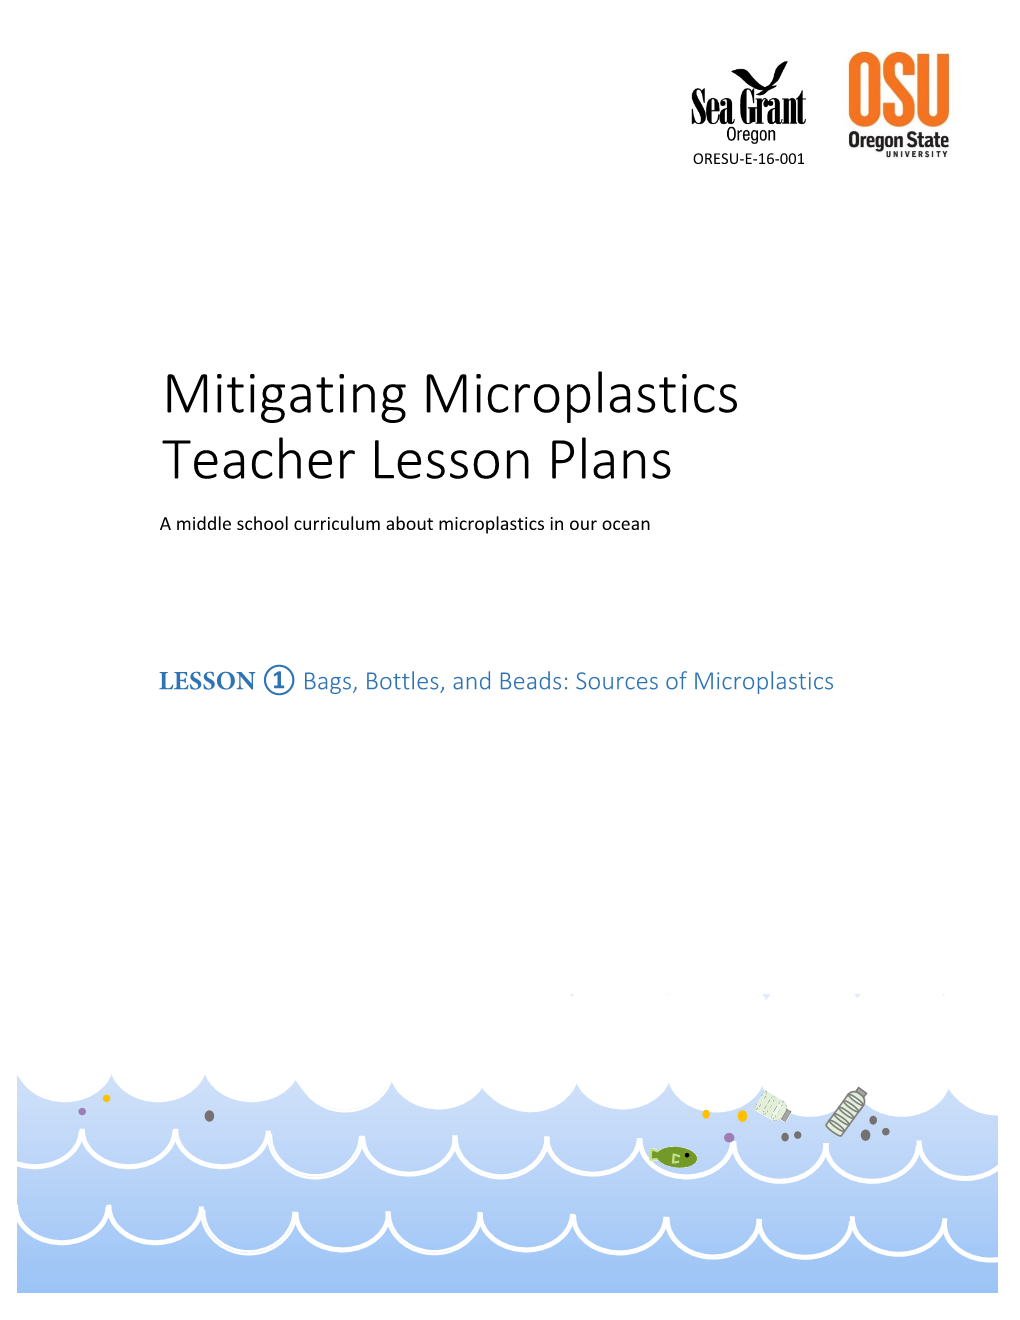 Mitigating Microplastics Curriculum